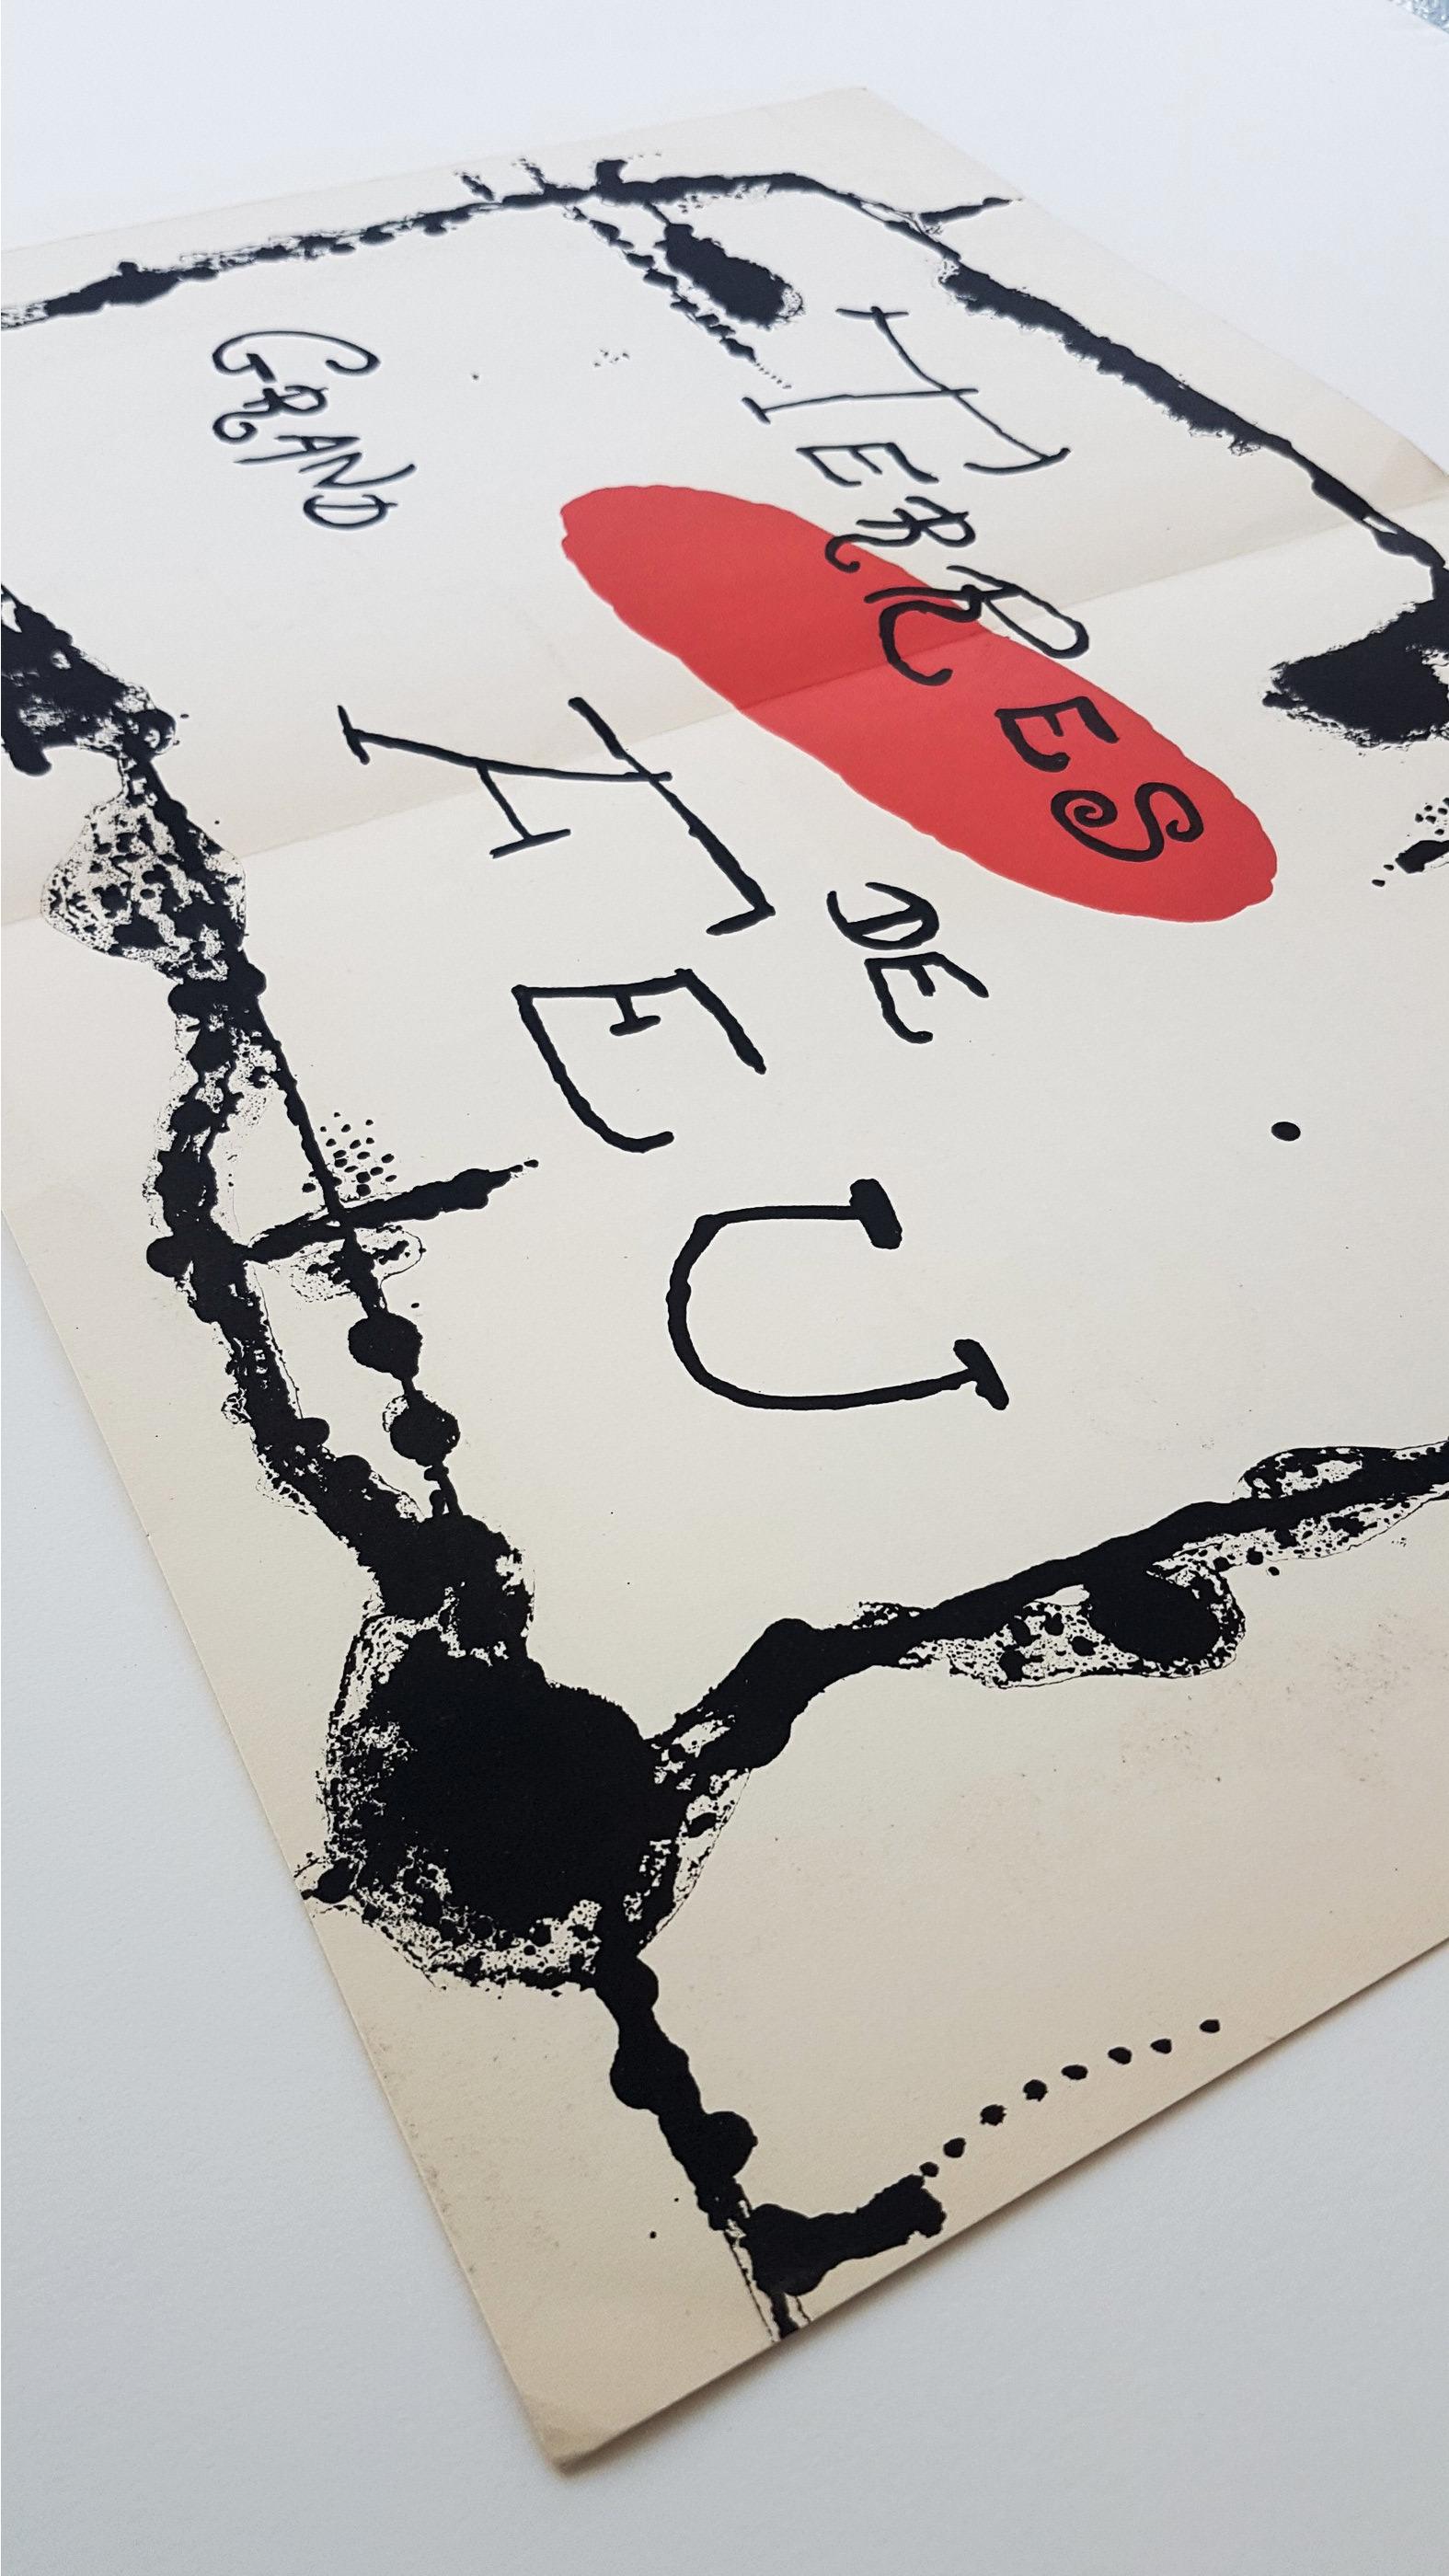 Terres Grand de Feu (ein Teller von Artigas) (~50% OFF-LIST-Preis, SCHLUSSVERKAUFTUNG) – Print von Joan Miró